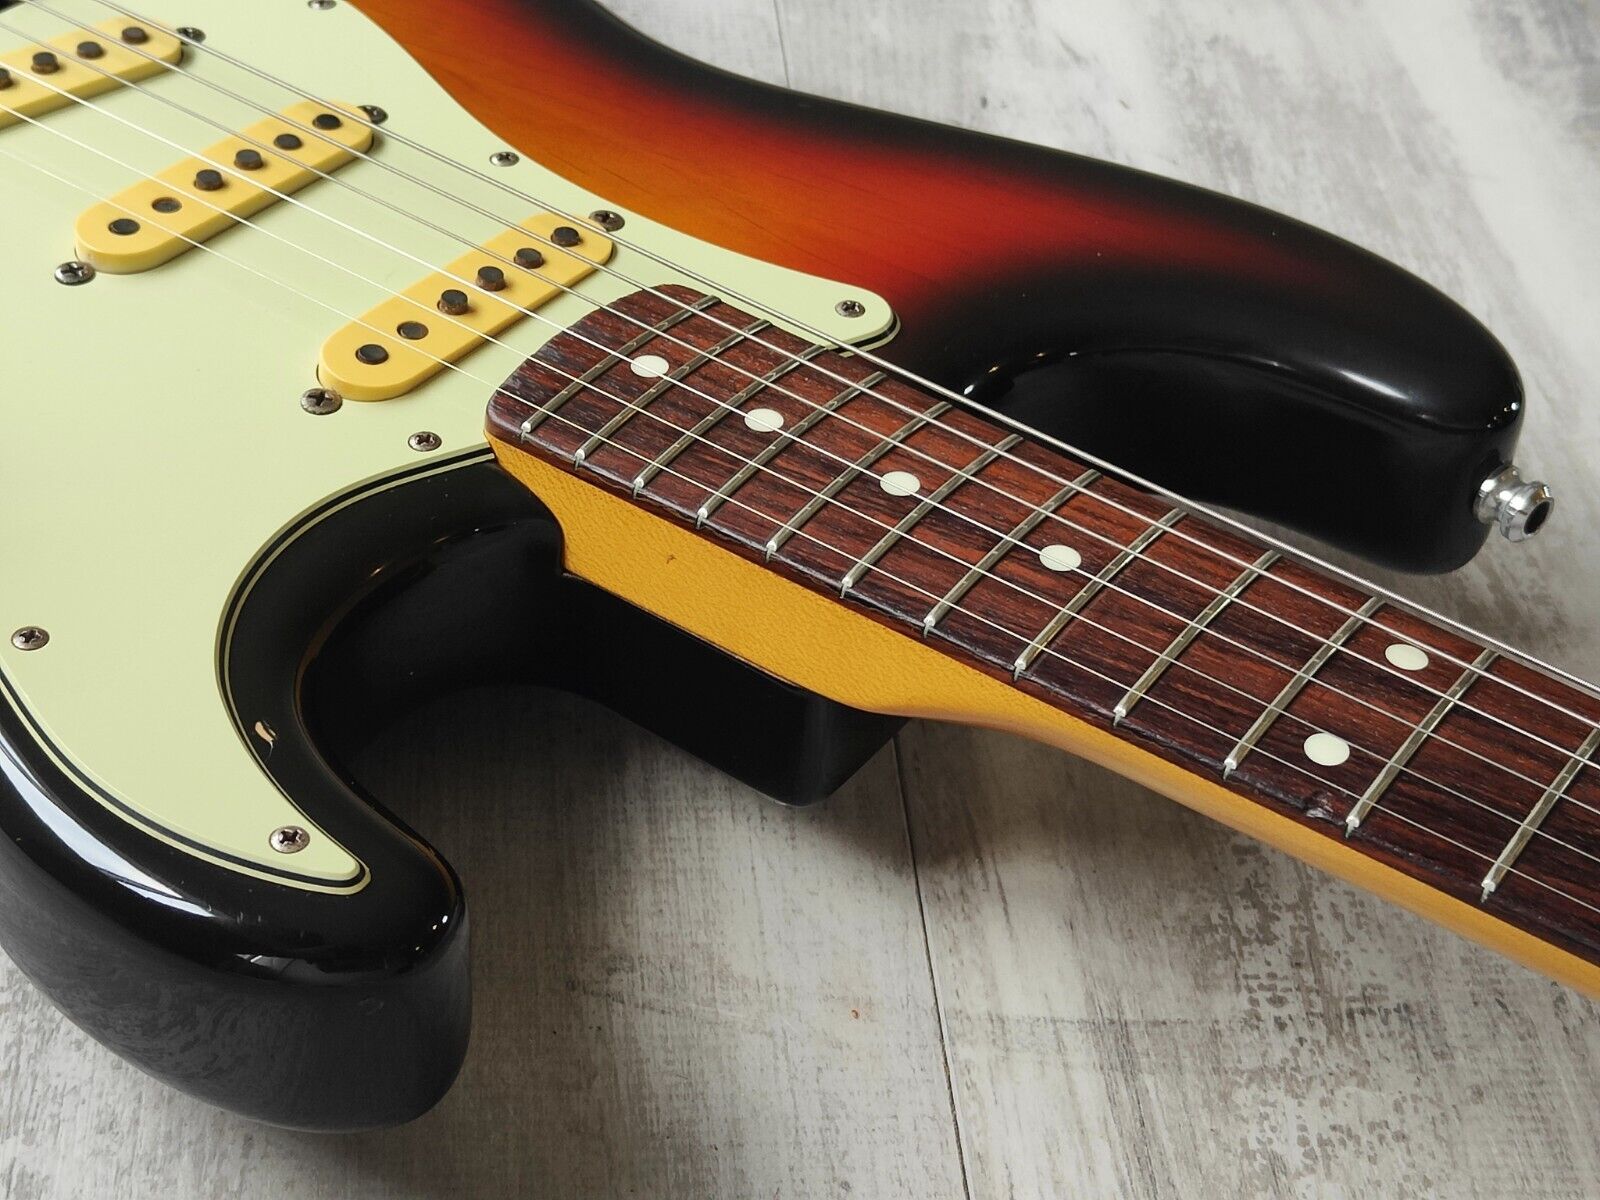 1993 Fender Japan ST62-70 '62 Reissue Stratocaster w/USA Pickups (Sunburst)